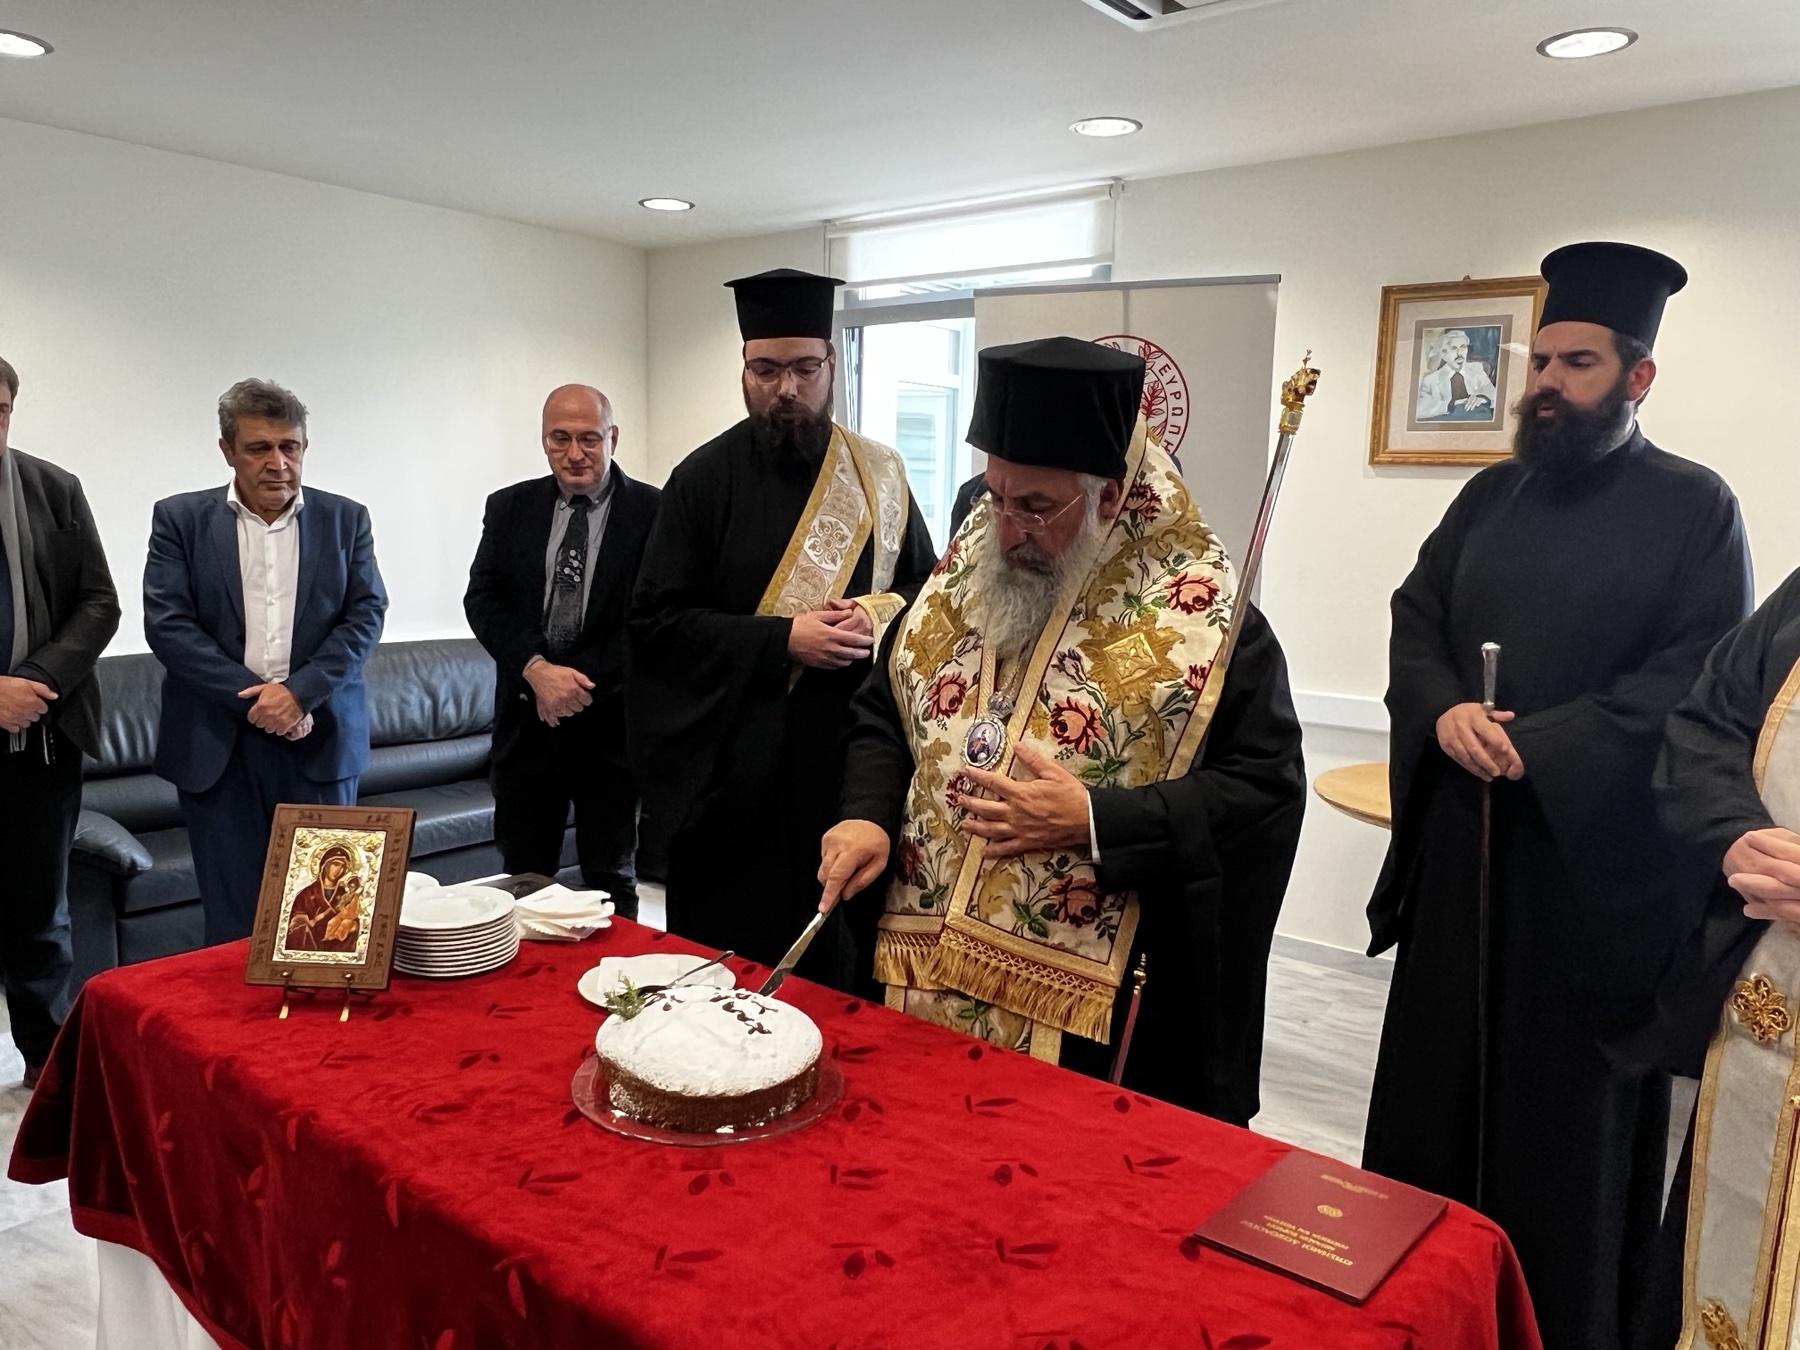 Στην κοπή της Βασιλόπιτας στο Πανεπιστήμιο της Κρήτης ο Αρχιεπίσκοπος Ευγένιος 